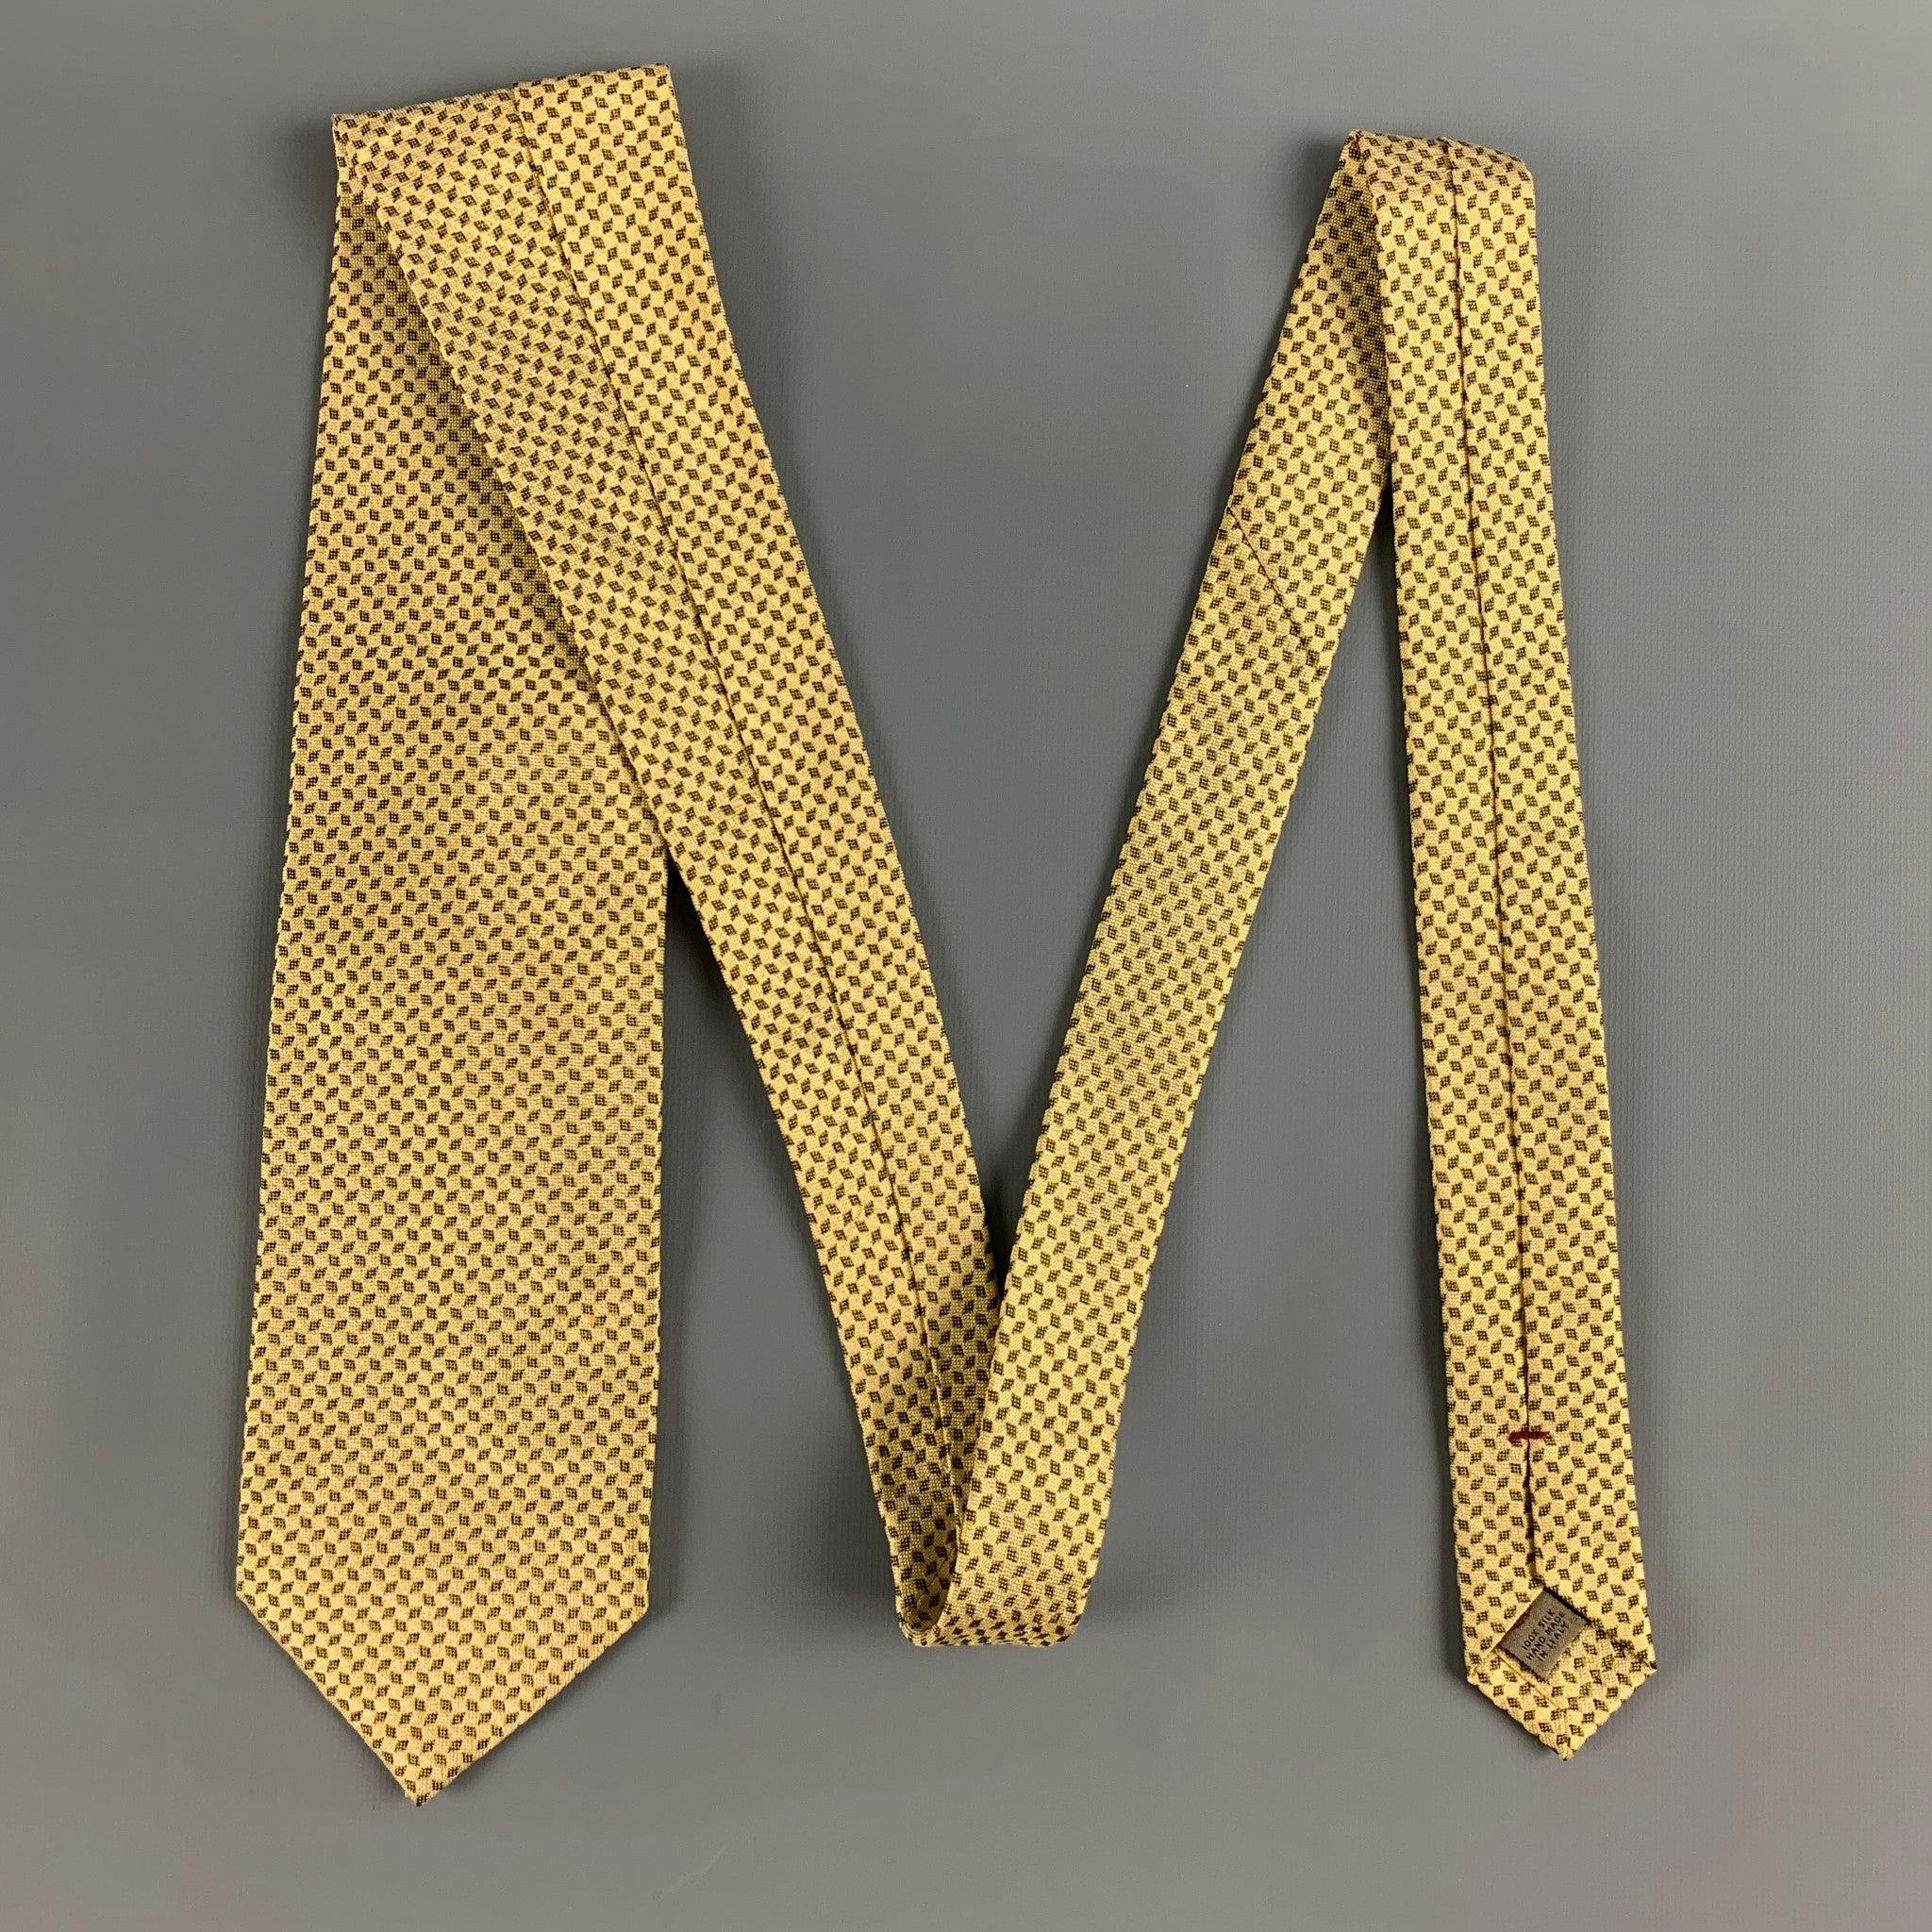 Die klassische Krawatte von LUCIANO BARBERA besteht aus 100% Seide und zeigt ein gelbes und schwarzes geometrisches Muster. Handgefertigt in Italien, sehr guter gebrauchter Zustand. 

Abmessungen: 
  Breite: 3 Zoll Länge: 58 Zoll 

  
  
 
Referenz: